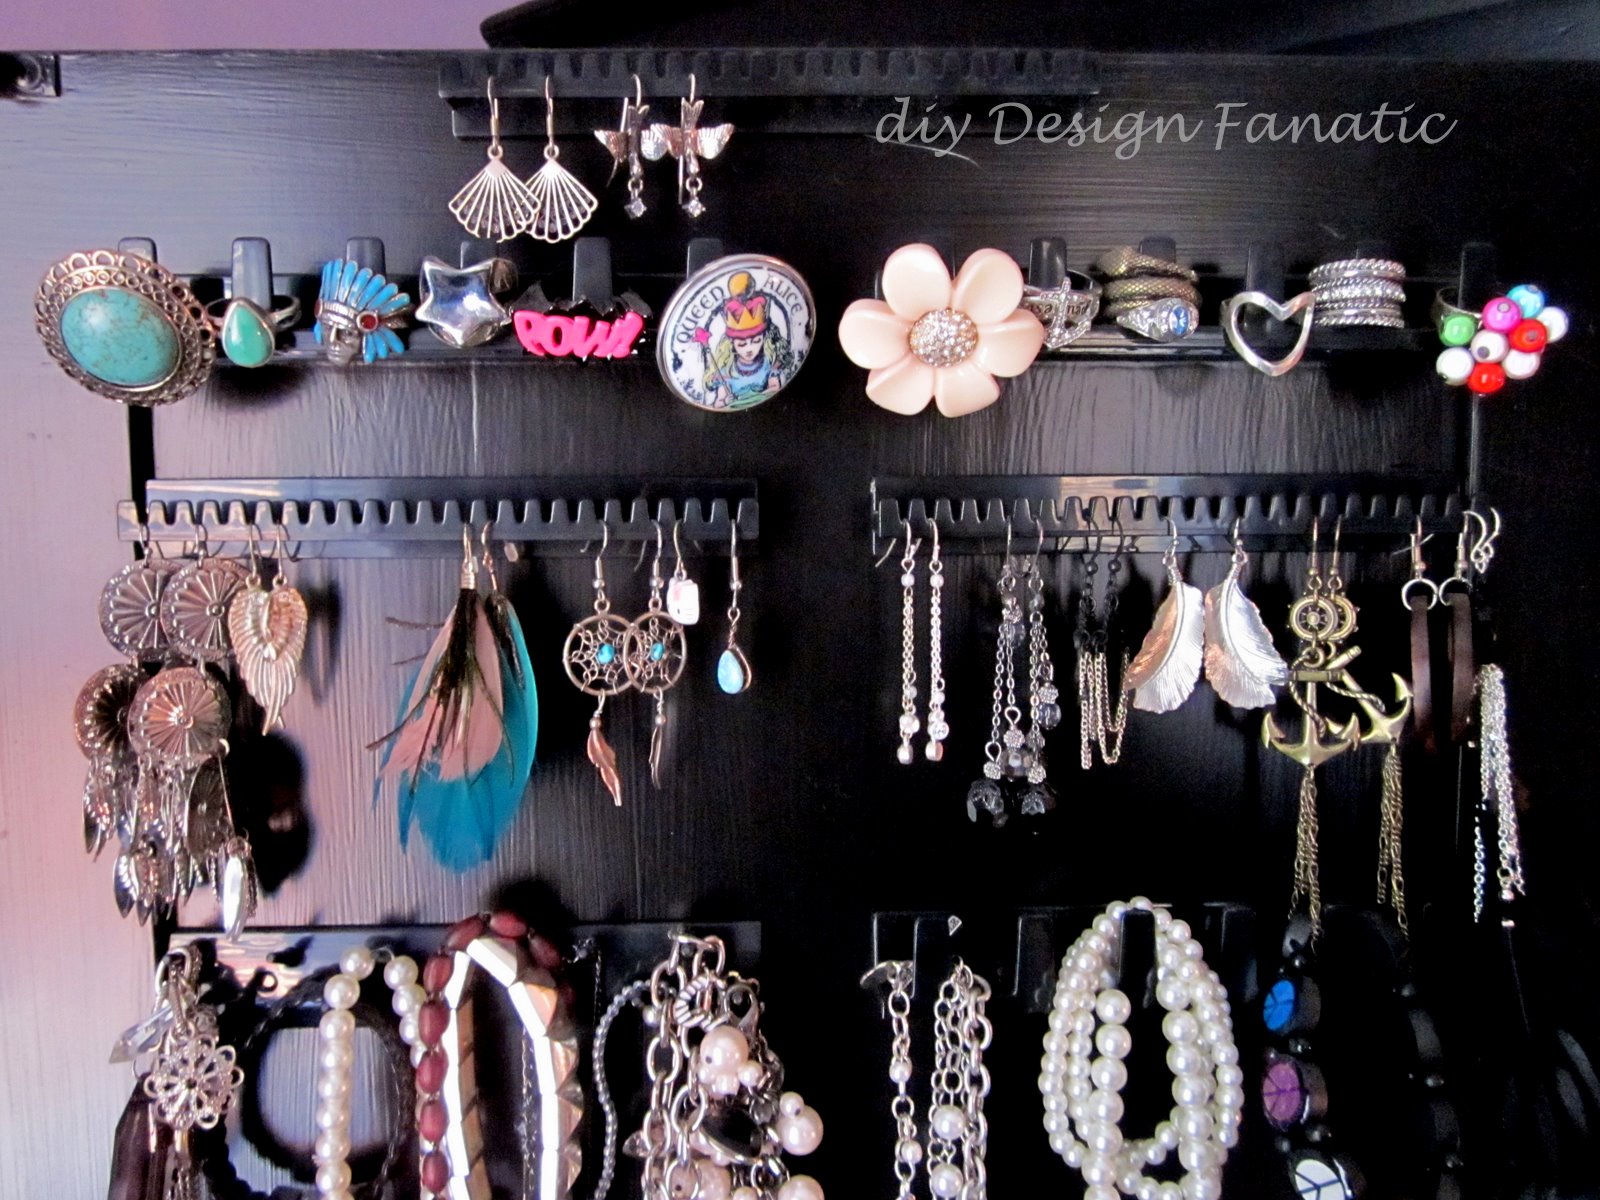 organized armoire, jewelry armoire, diydesignfanatic.com 